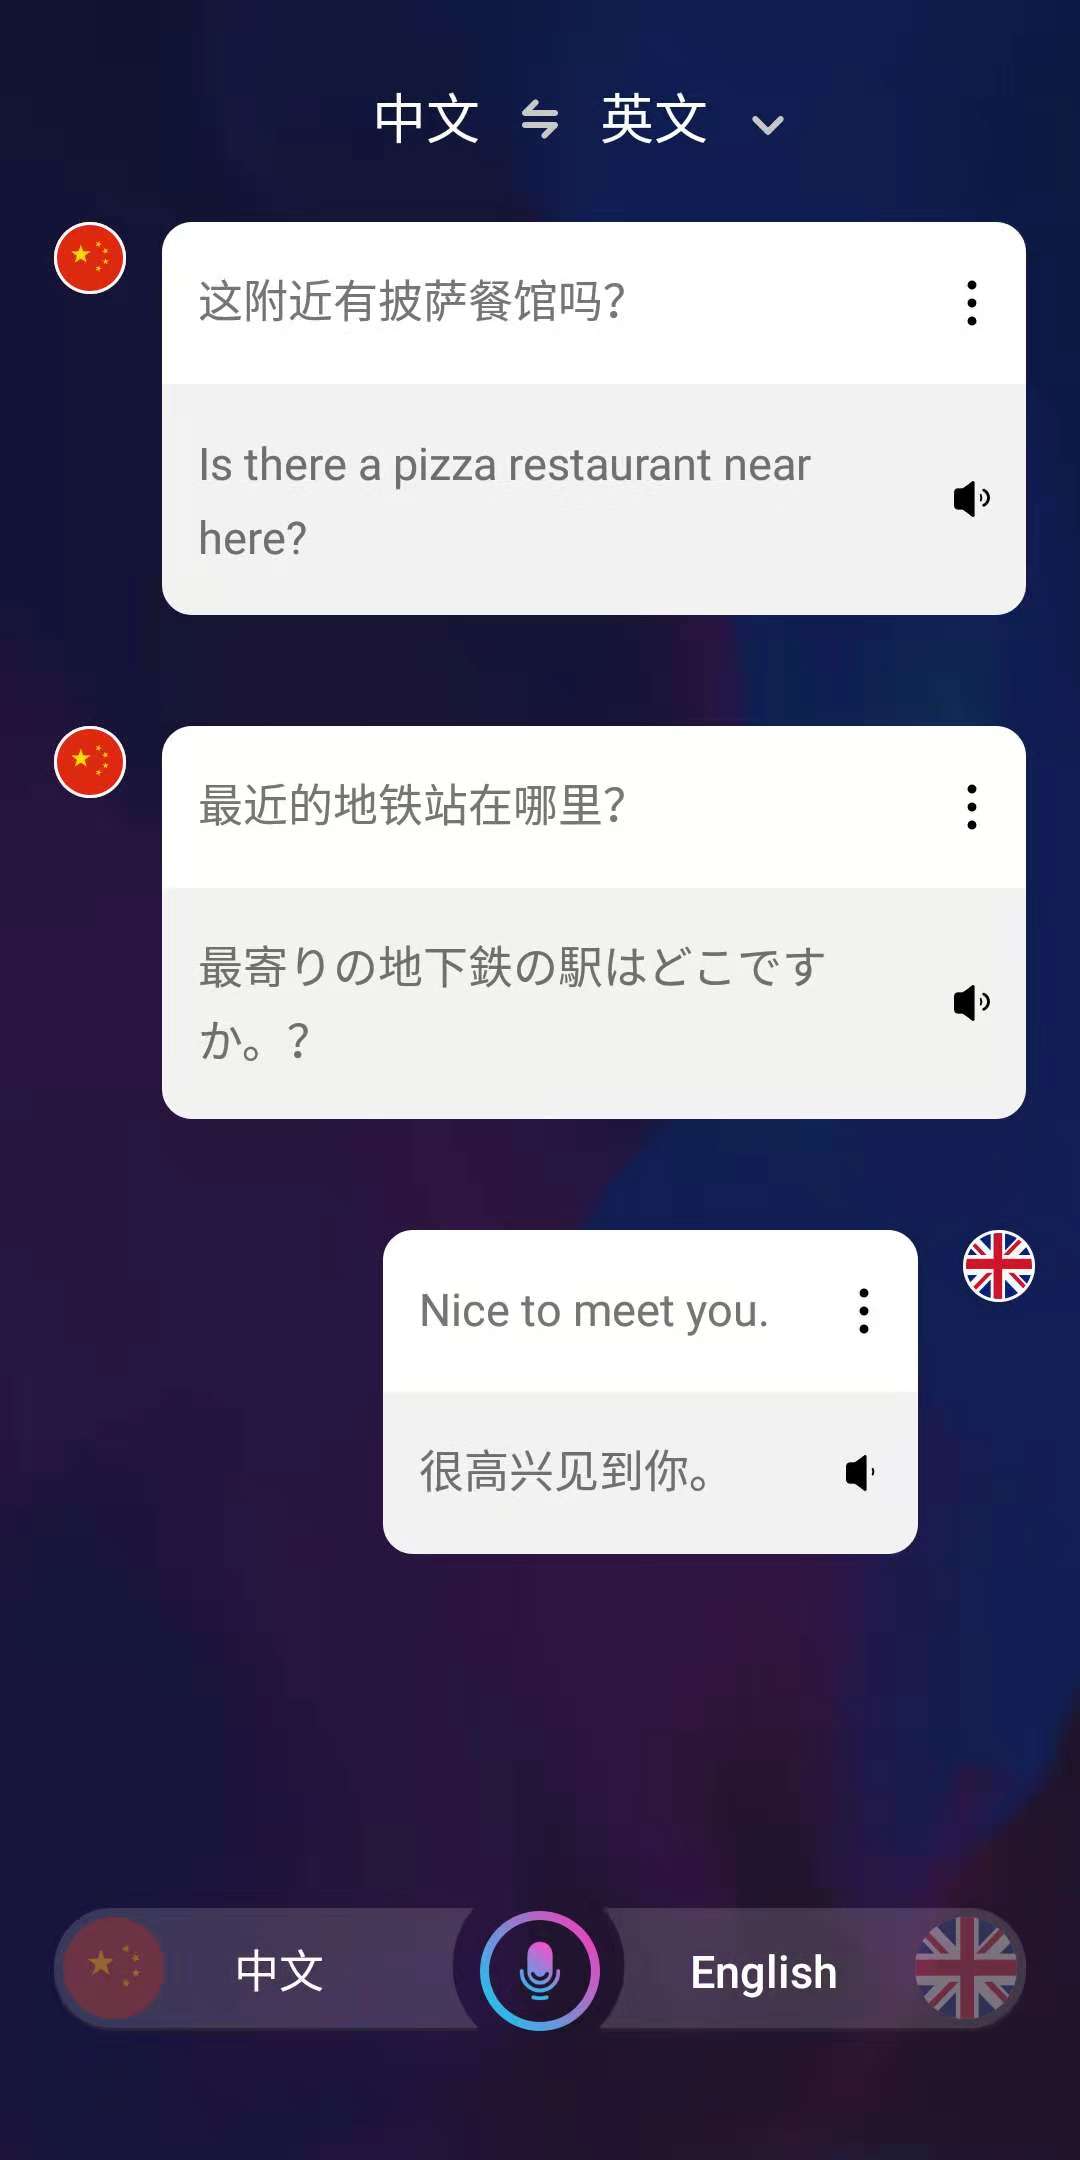 猫语翻译器最新版安卓版下载_猫语翻译器最新版app下载_快吧游戏